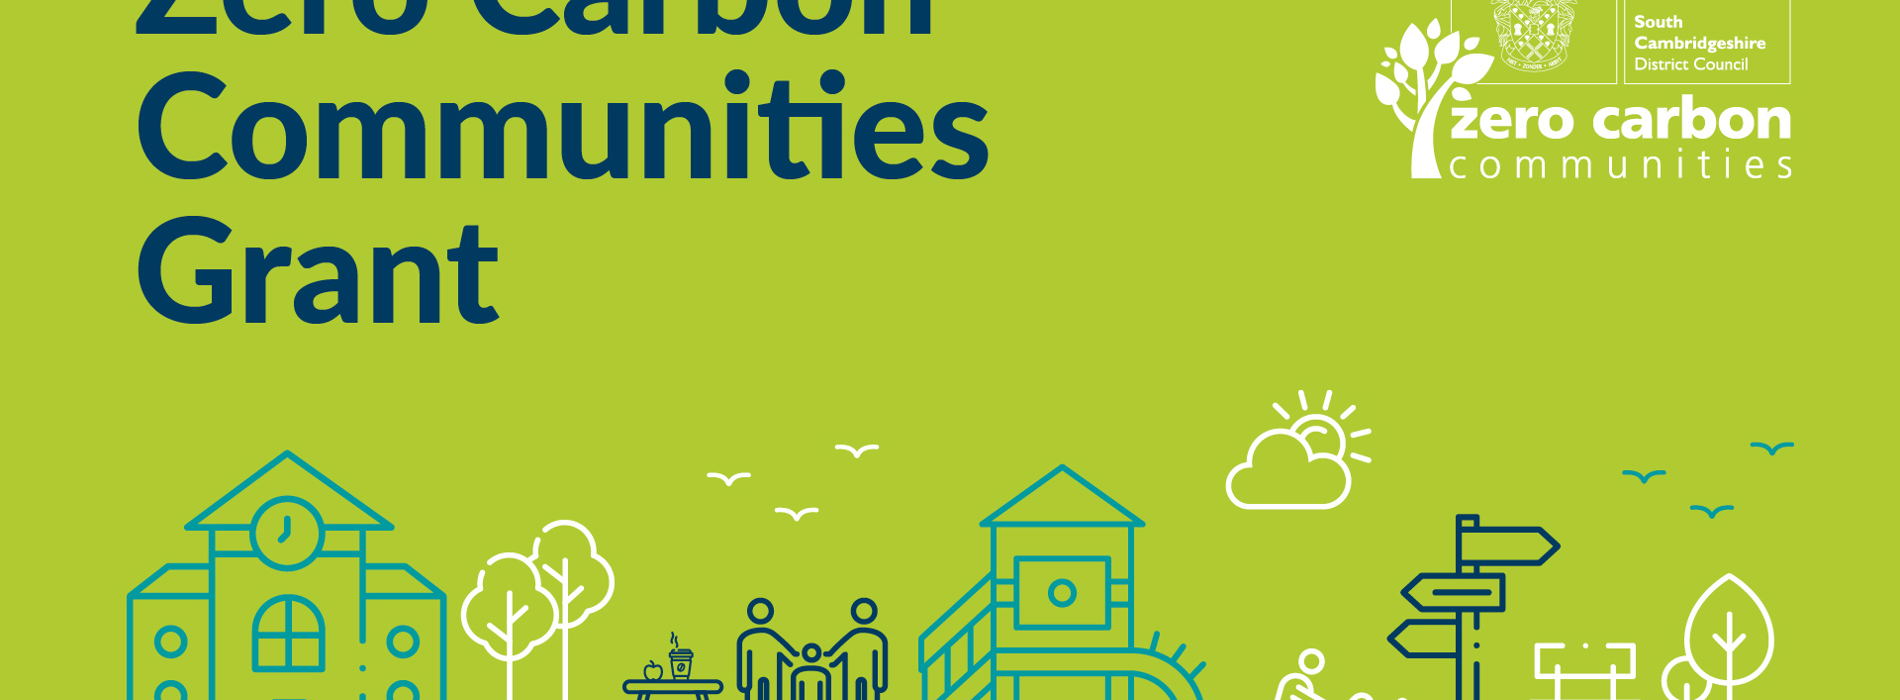 Zero Carbon Communities Grants